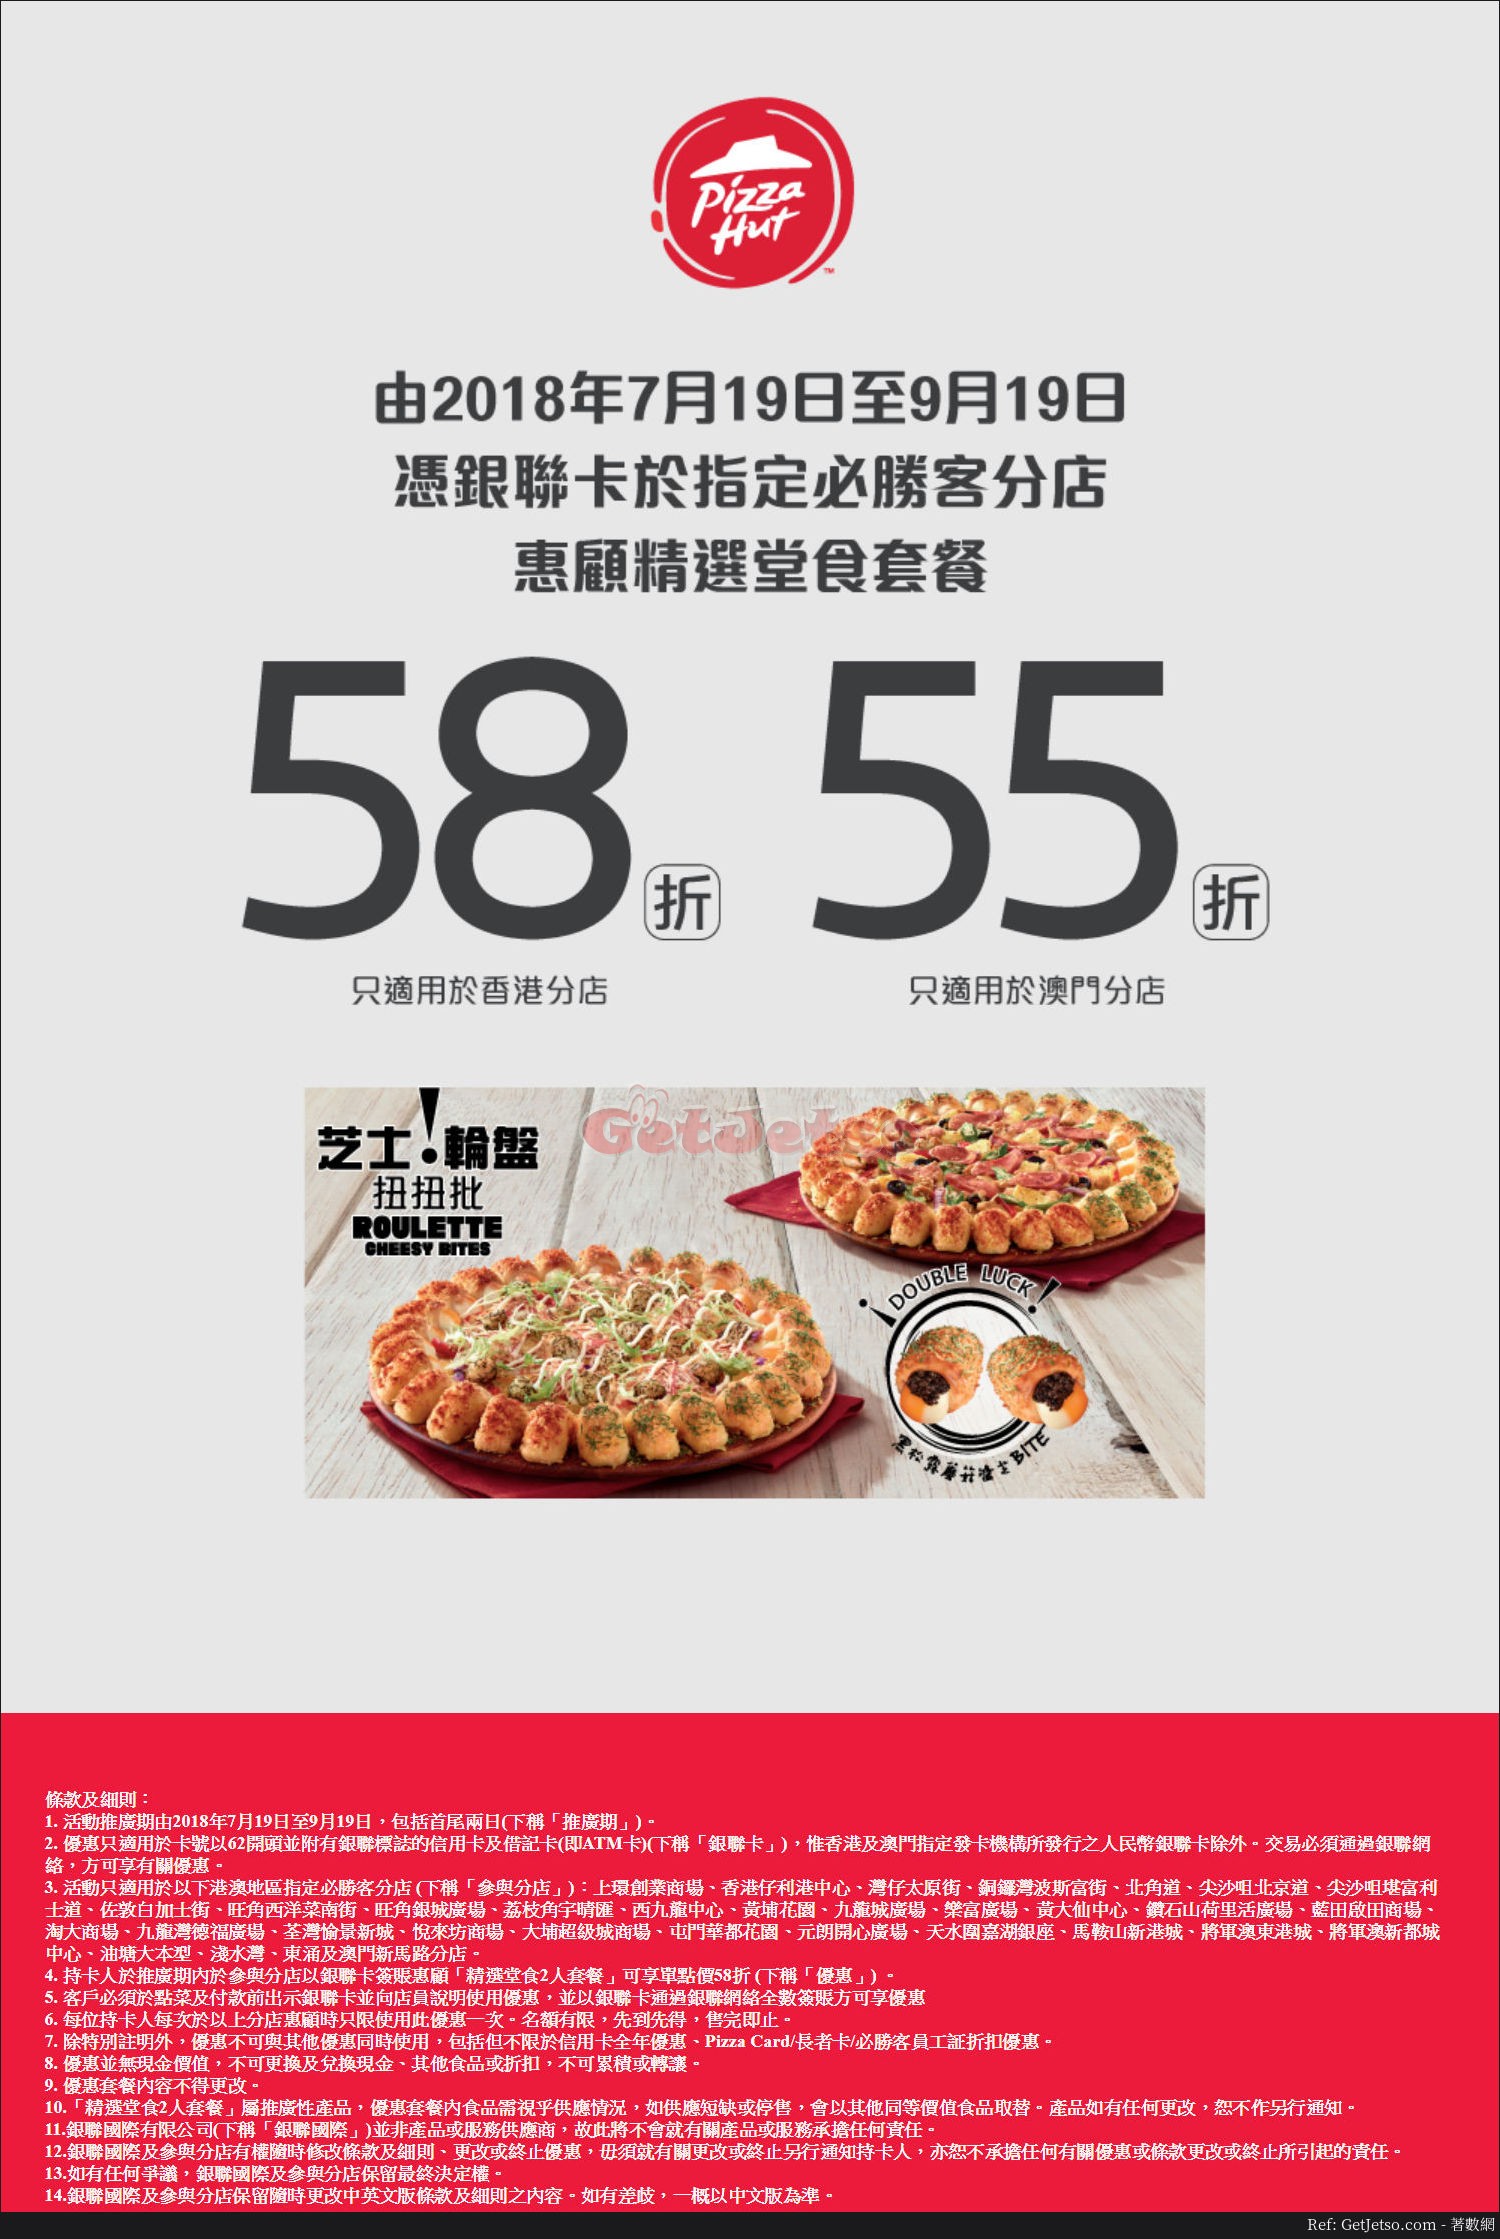 Pizza Hut 低至58折套餐優惠@銀聯卡(至18年9月19日)圖片1